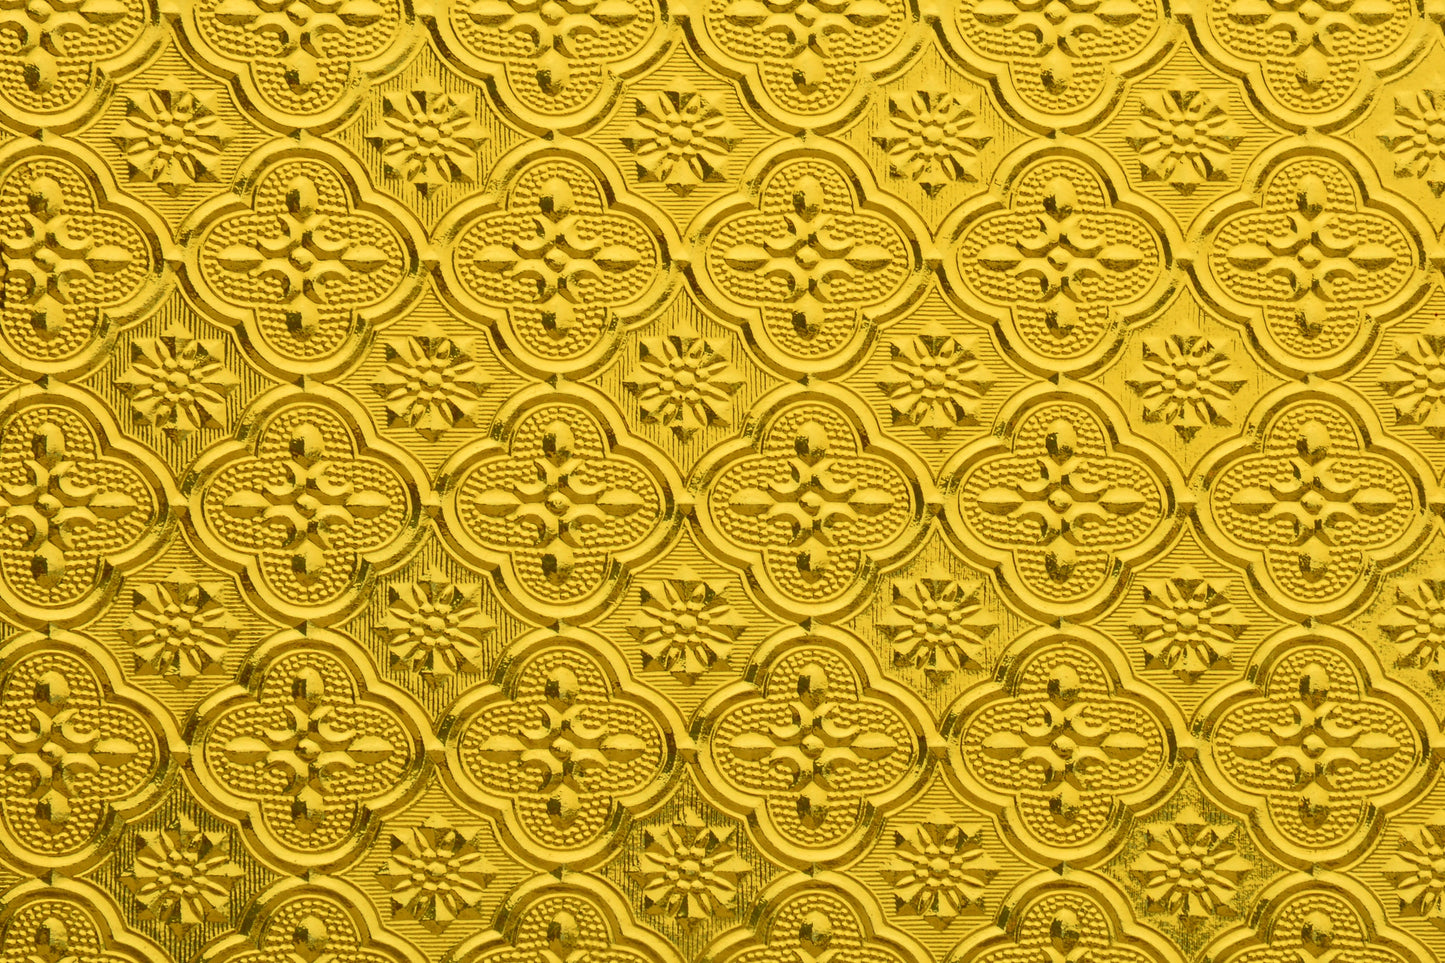 Luxury gold window glass pattern wallpaper for wall